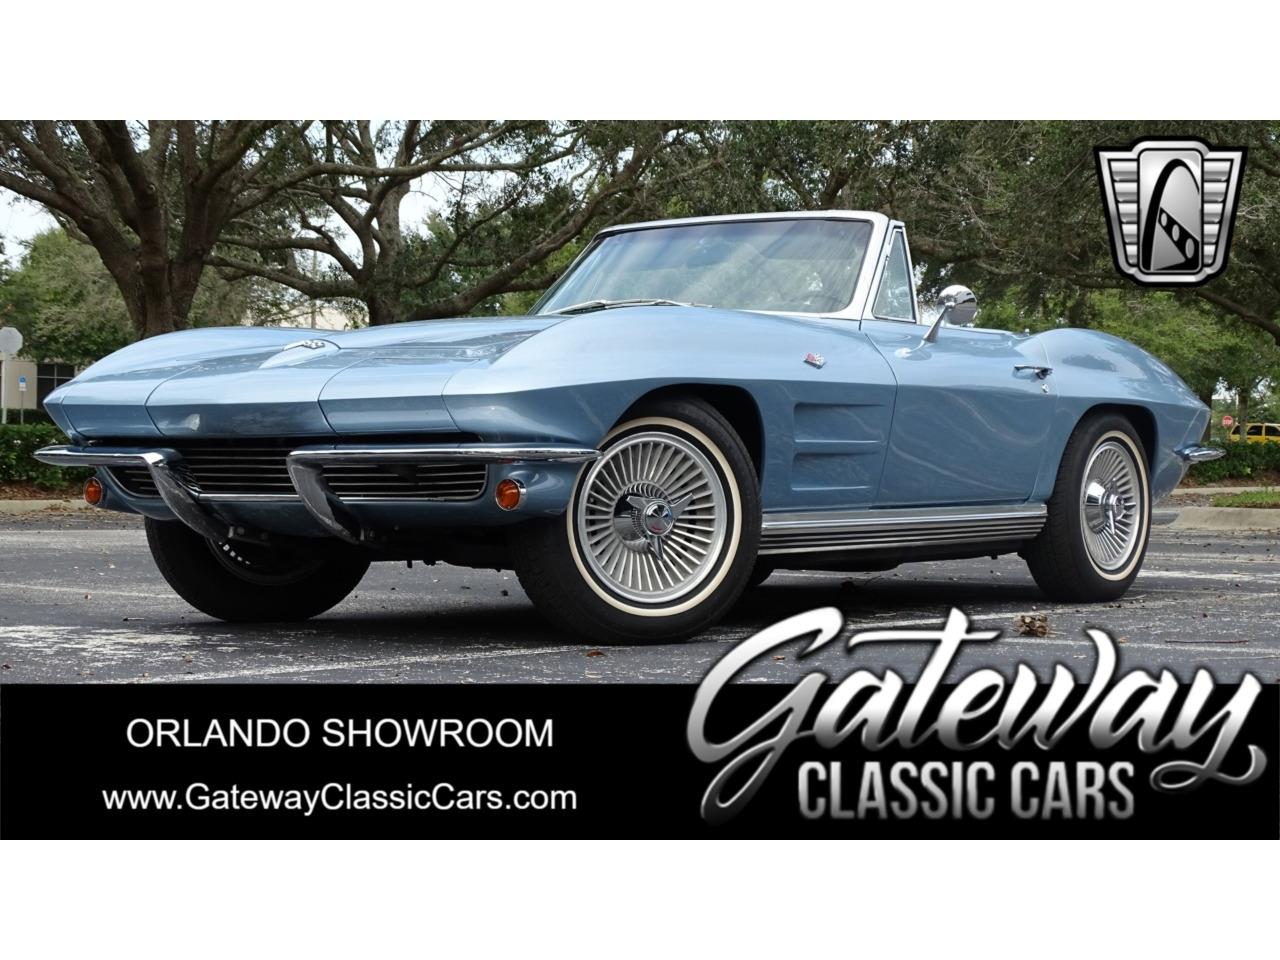 For Sale: 1964 Chevrolet Corvette in O'Fallon, Illinois for sale in O Fallon, IL